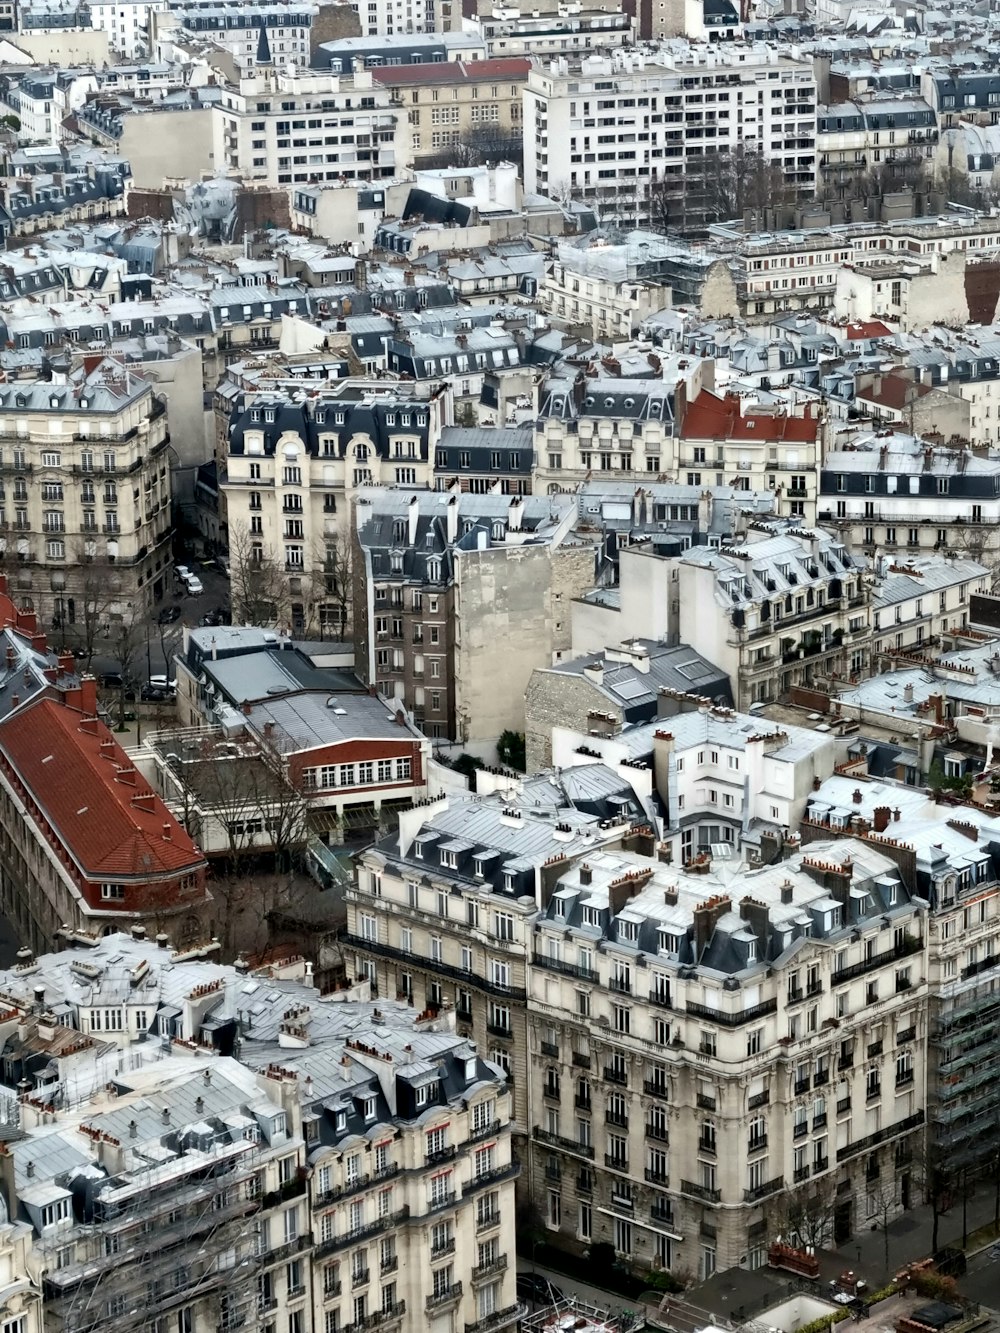 Una vista aerea di una città con molti edifici alti